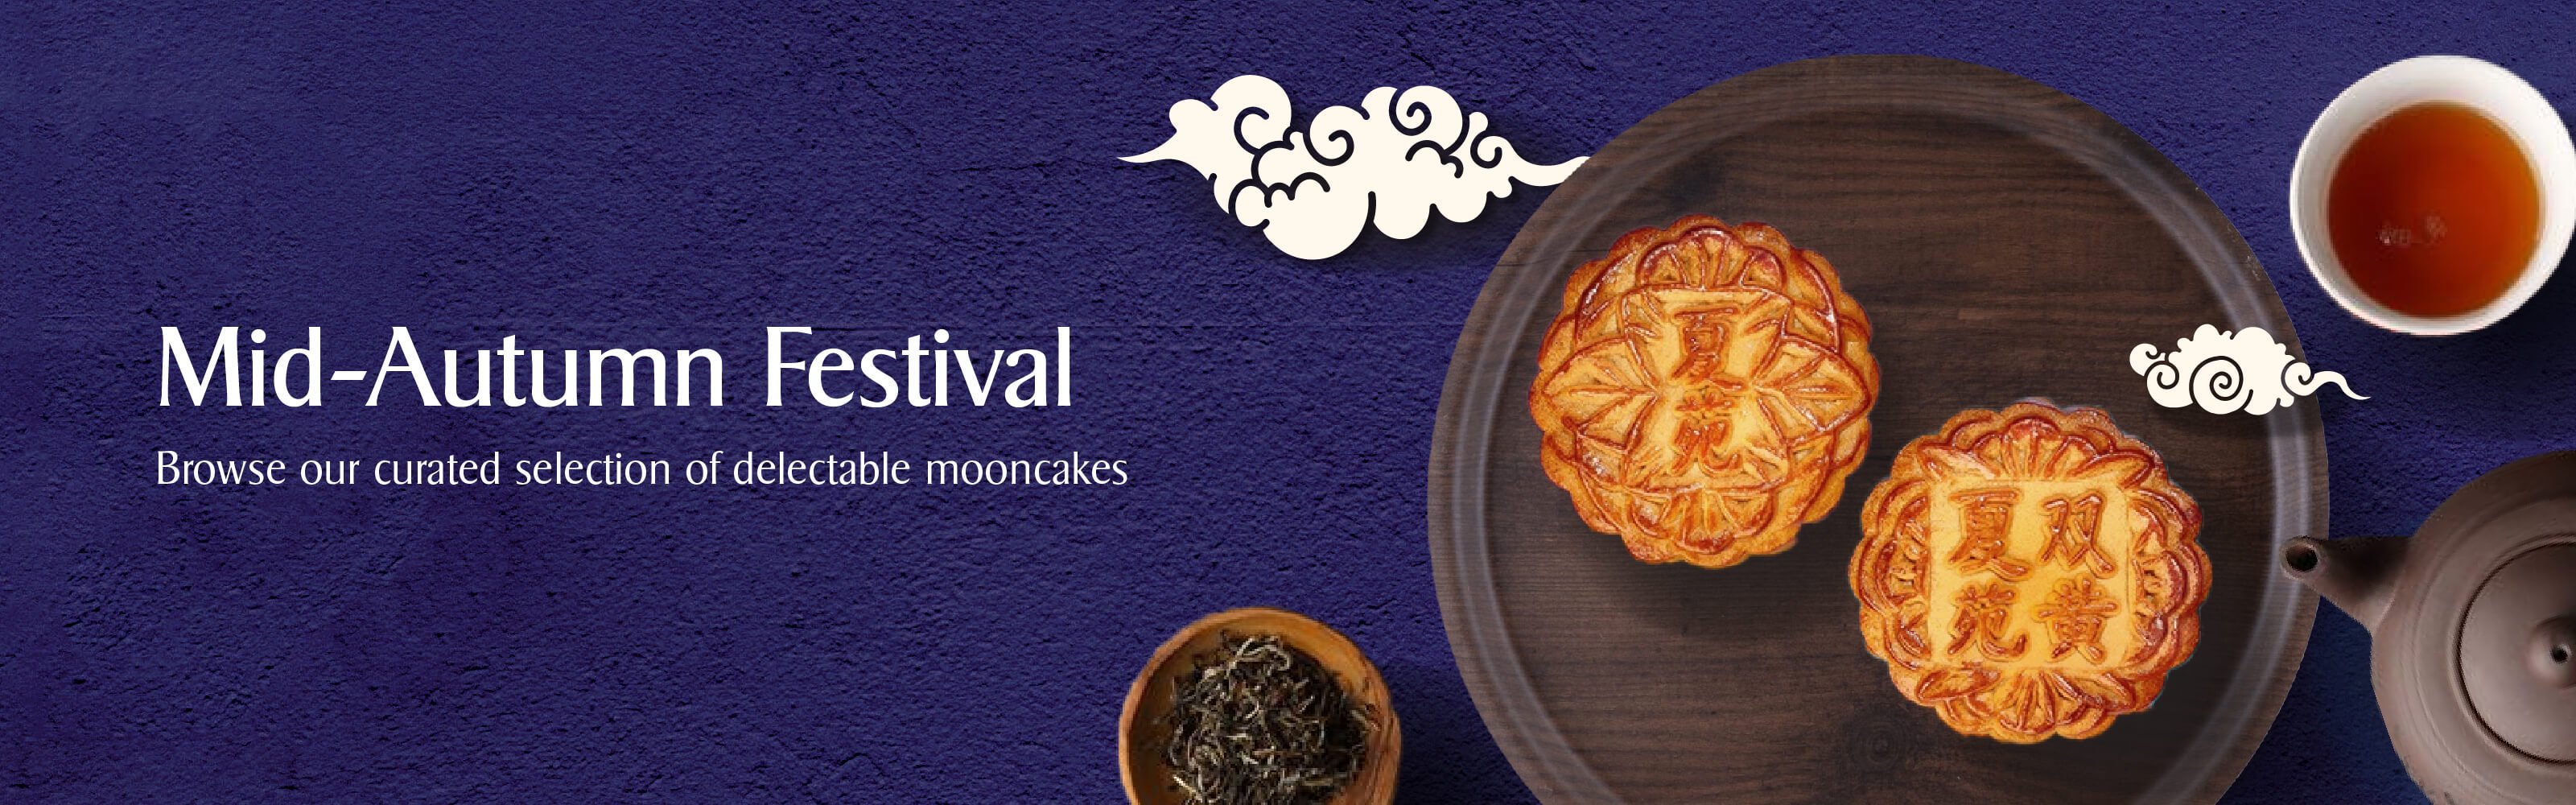 KrisShop Mooncake Mid-Autumn Festival